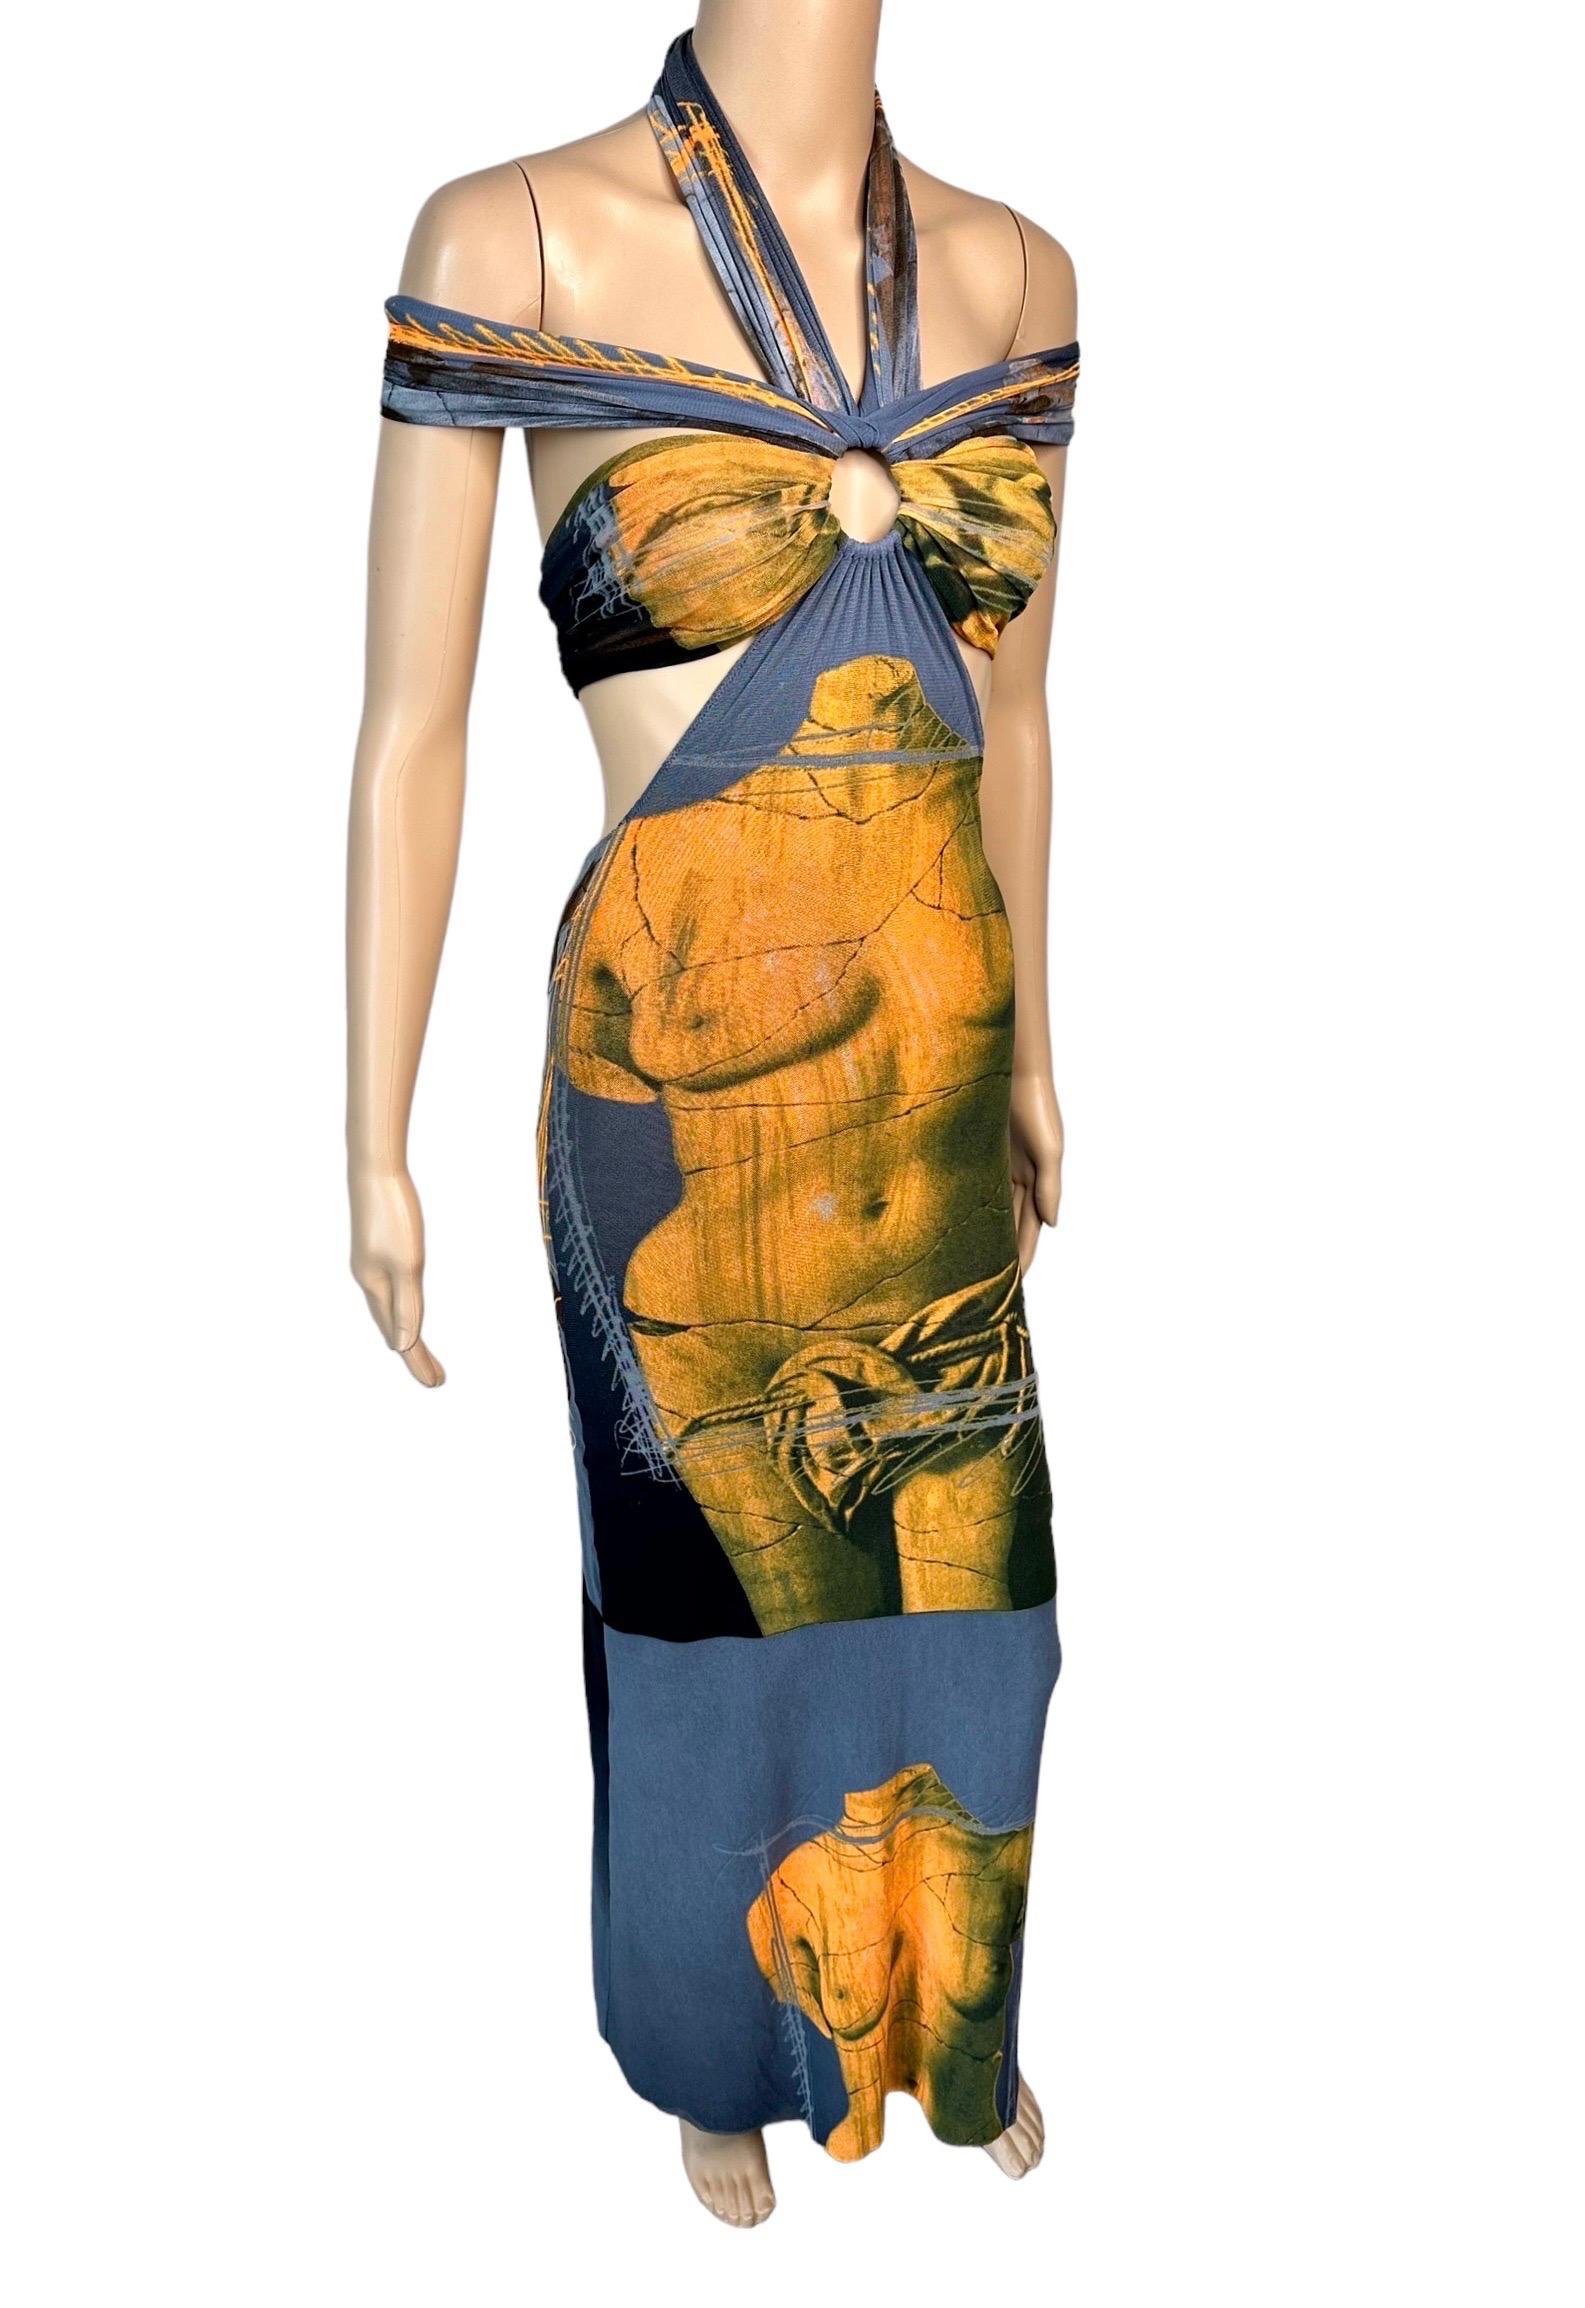 Jean Paul Gaultier Soleil S/S 1999 Vintage Venus De Milo Cutout Mesh Sheer Dress 6